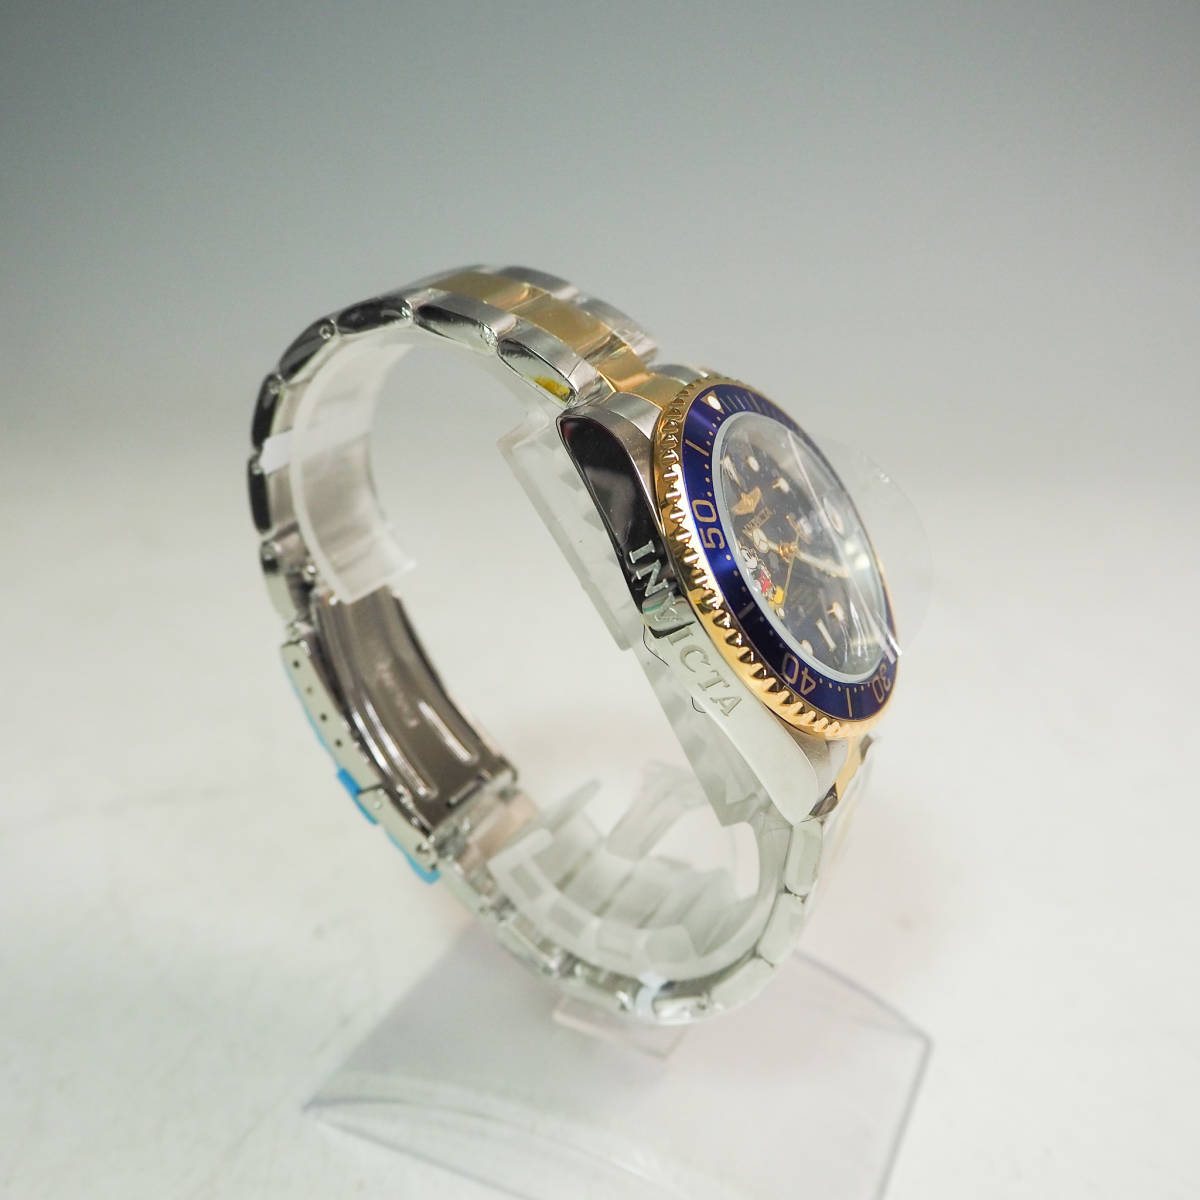 未使用品 INVICTA インヴィクタ Disney ディズニー Limited Edition 自動巻 腕時計 model 22778 世界限定3000個 クォーツ ミッキー GR832_画像4